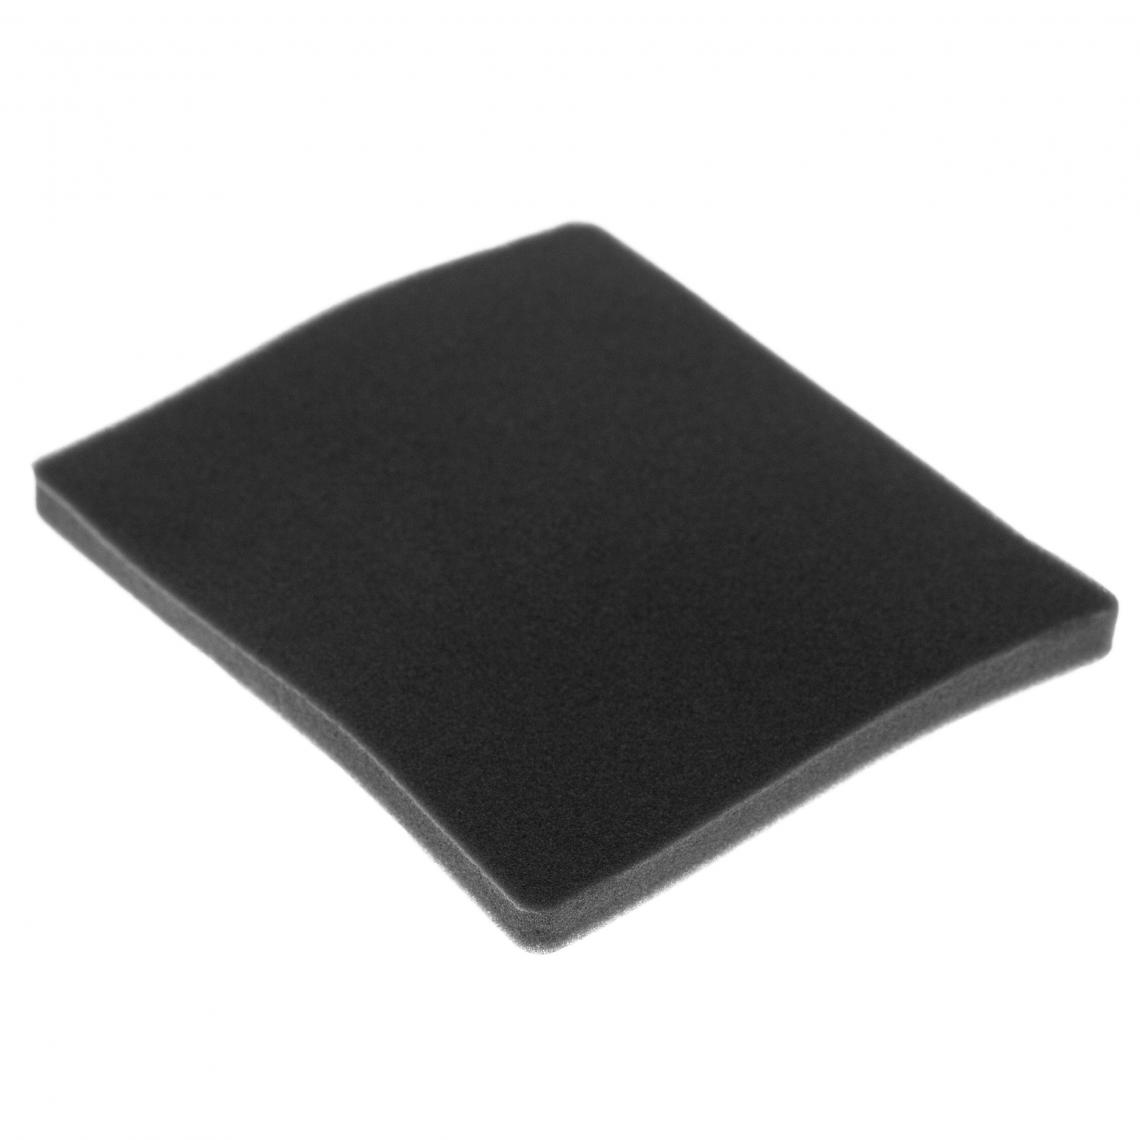 Vhbw - vhbw Filtre compatible avec Electrolux ZCX6202 (910286656) aspirateur - filtre de sortie d'air (filtre éponge), noir - Accessoire entretien des sols